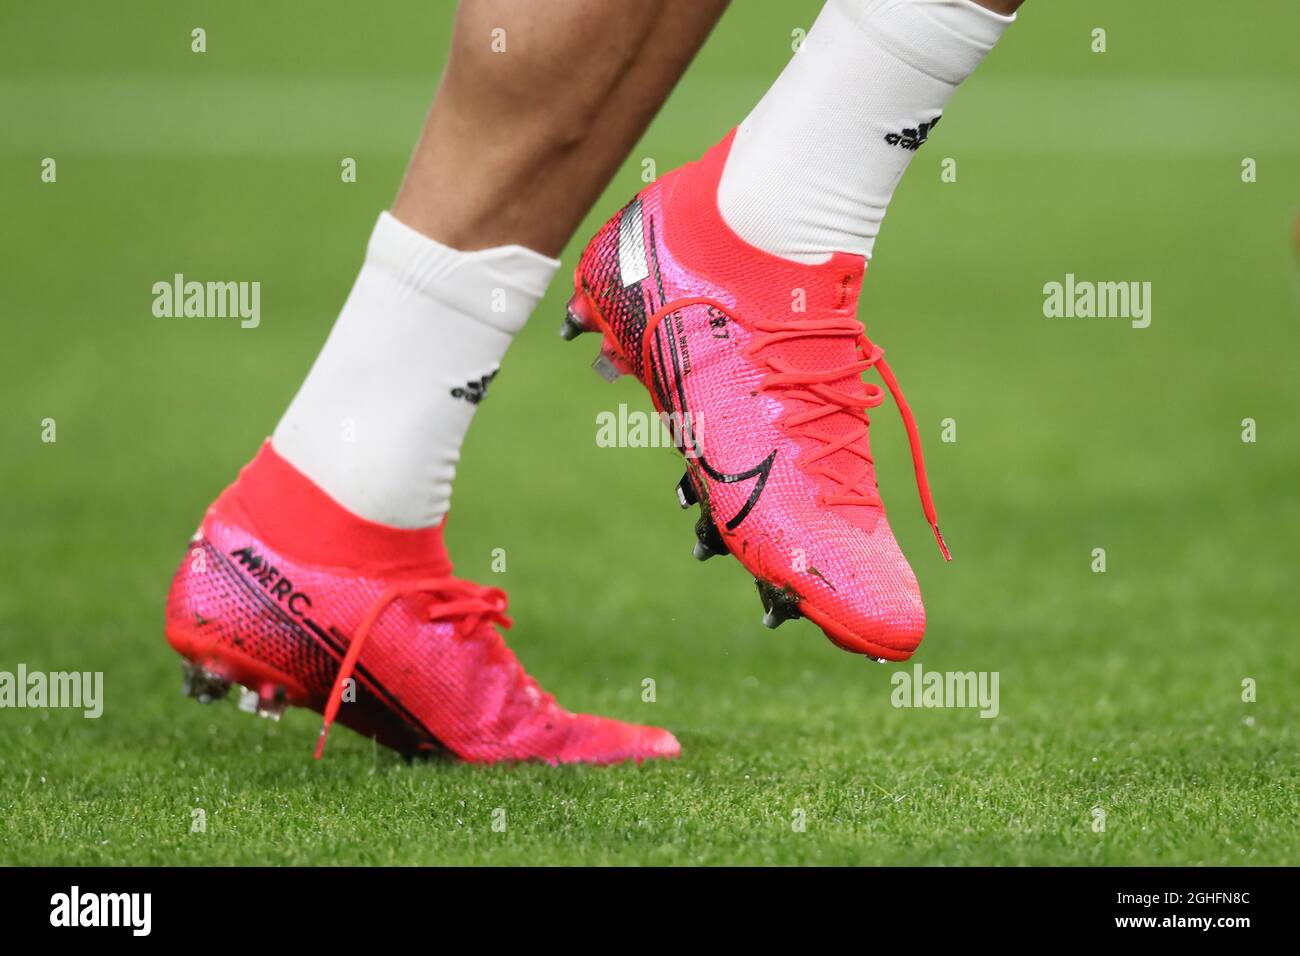 Cristiano Ronaldo ha indossato le scarpe Nike Mercurial della Juventus  durante la partita Coppa Italia allo Stadio Allianz di Torino. Data foto:  22 gennaio 2020. Il credito d'immagine dovrebbe essere: Jonathan  Moscrop/Sportimage